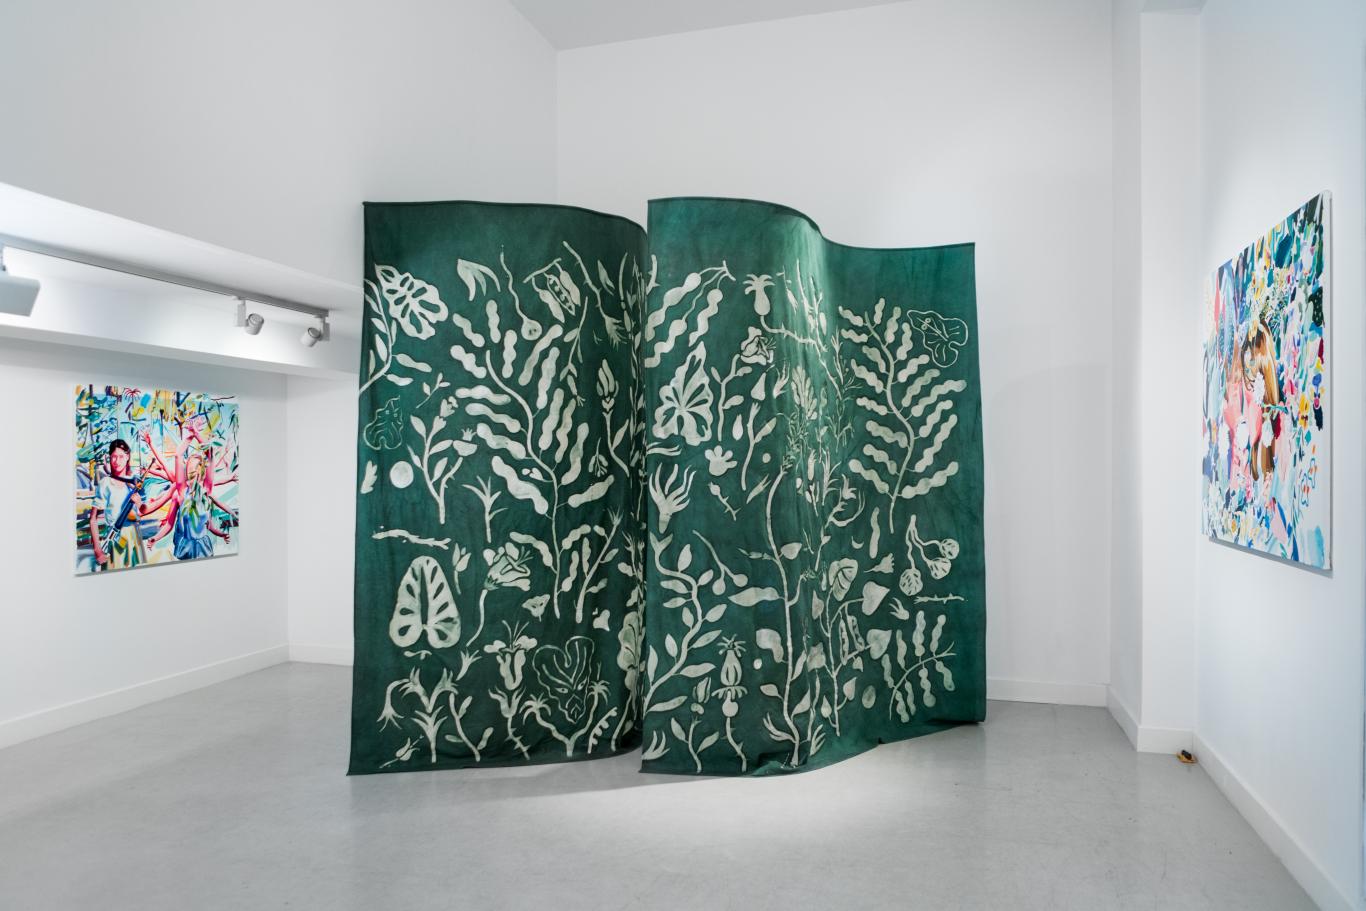 Telón de tela verde con dibujo de ramas y hojas simulando un bosque